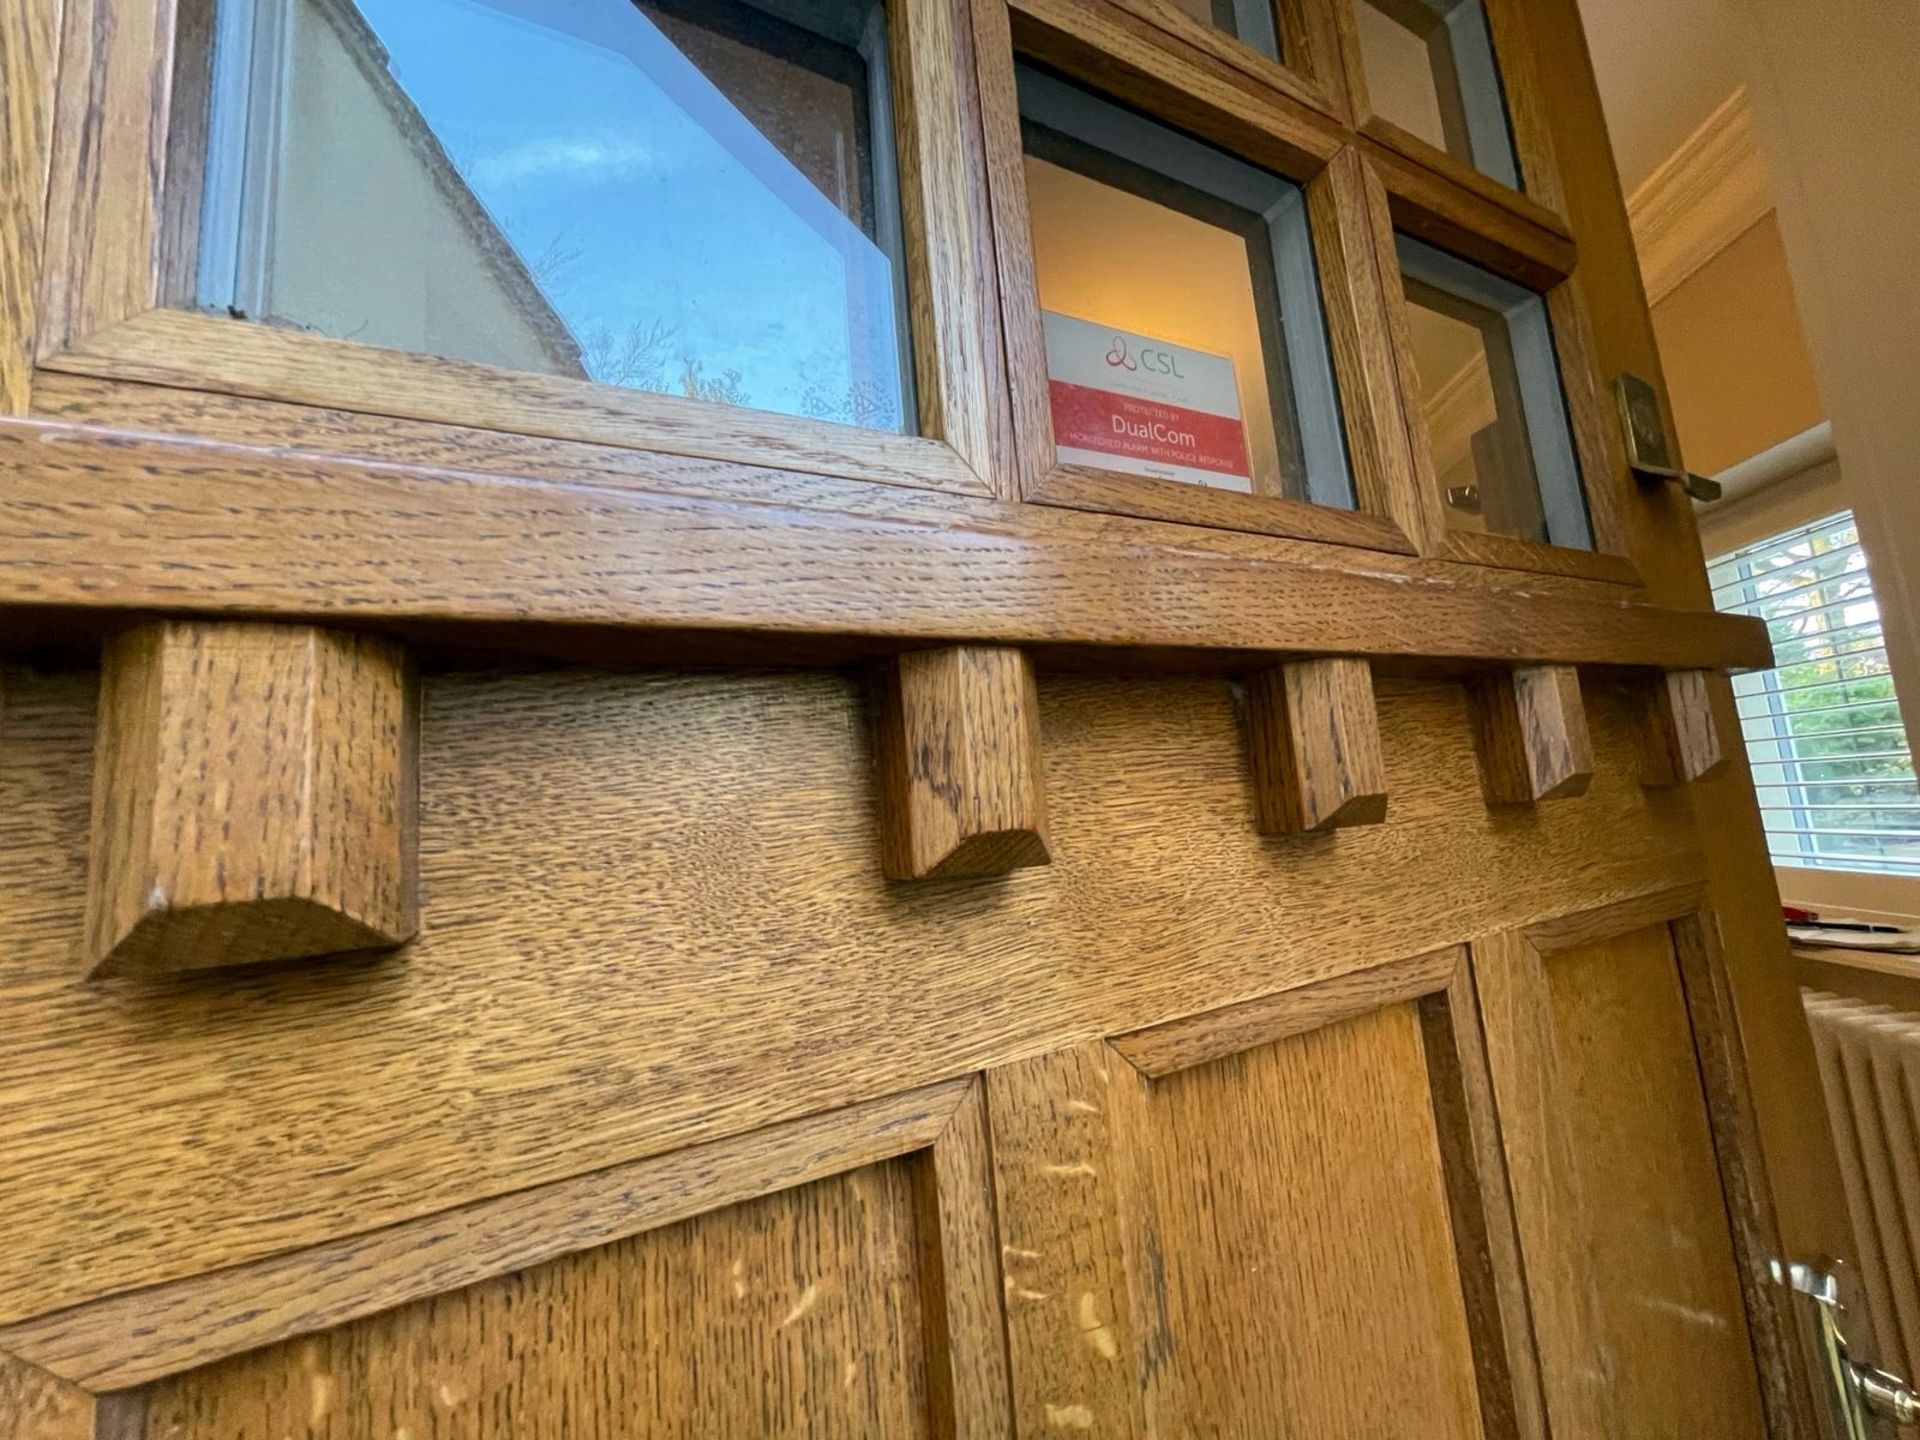 1 x Solid Wood Lockable Glazed External Side Door - Includes Hinges & Handles - Ref: PAN141 - NO VAT - Image 9 of 17